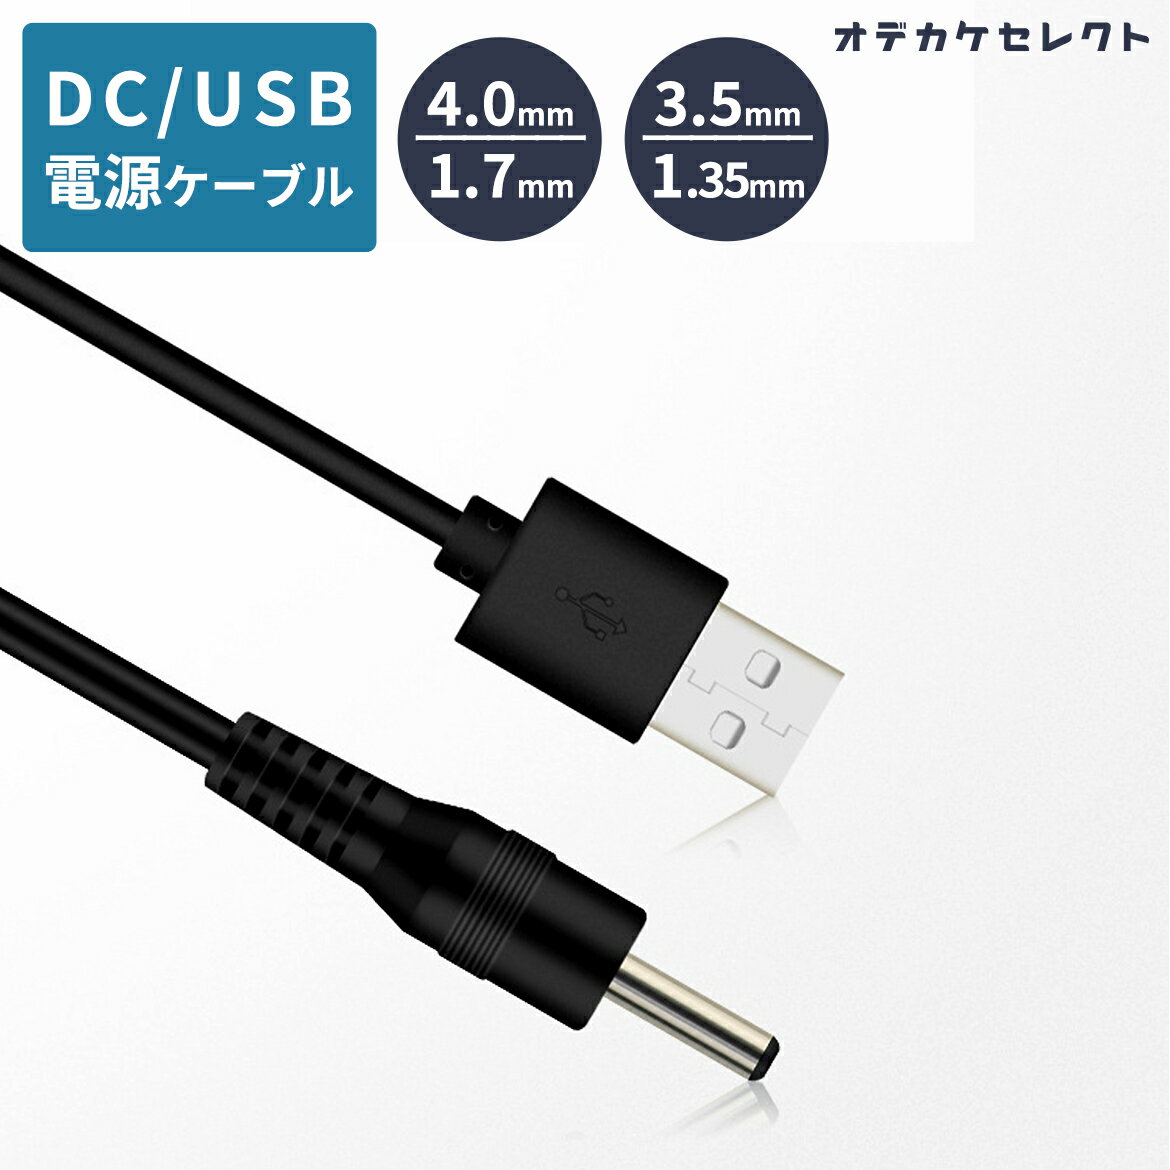 キーワード： おでかけせれくと お出かけセレクト 楽天 楽天市場 Rakuten おすすめ 人気 電源ケーブル 電源コード 電源供給ケーブル DC 3.5mm 1.35mm 4.0mm 1.7mm 5V USB 長さ 2m5V/12V対応USB電源ケーブル USB電源アダプターに繋げばDC電源アダプターの代用で使える♪ 製品名 USB電源ケーブルUSB to DC3.5/4.0 ケーブルの外径 3.5mm ケーブルの長さ 2m ケーブル外被素材 PVC プラグ規格 DC4.0*1.7/DC3.5*1.35 備考 ※電源アダプターは使用する電化製品の電圧と同じもの、且つ定格電流と同じか大きいものを使用してください。